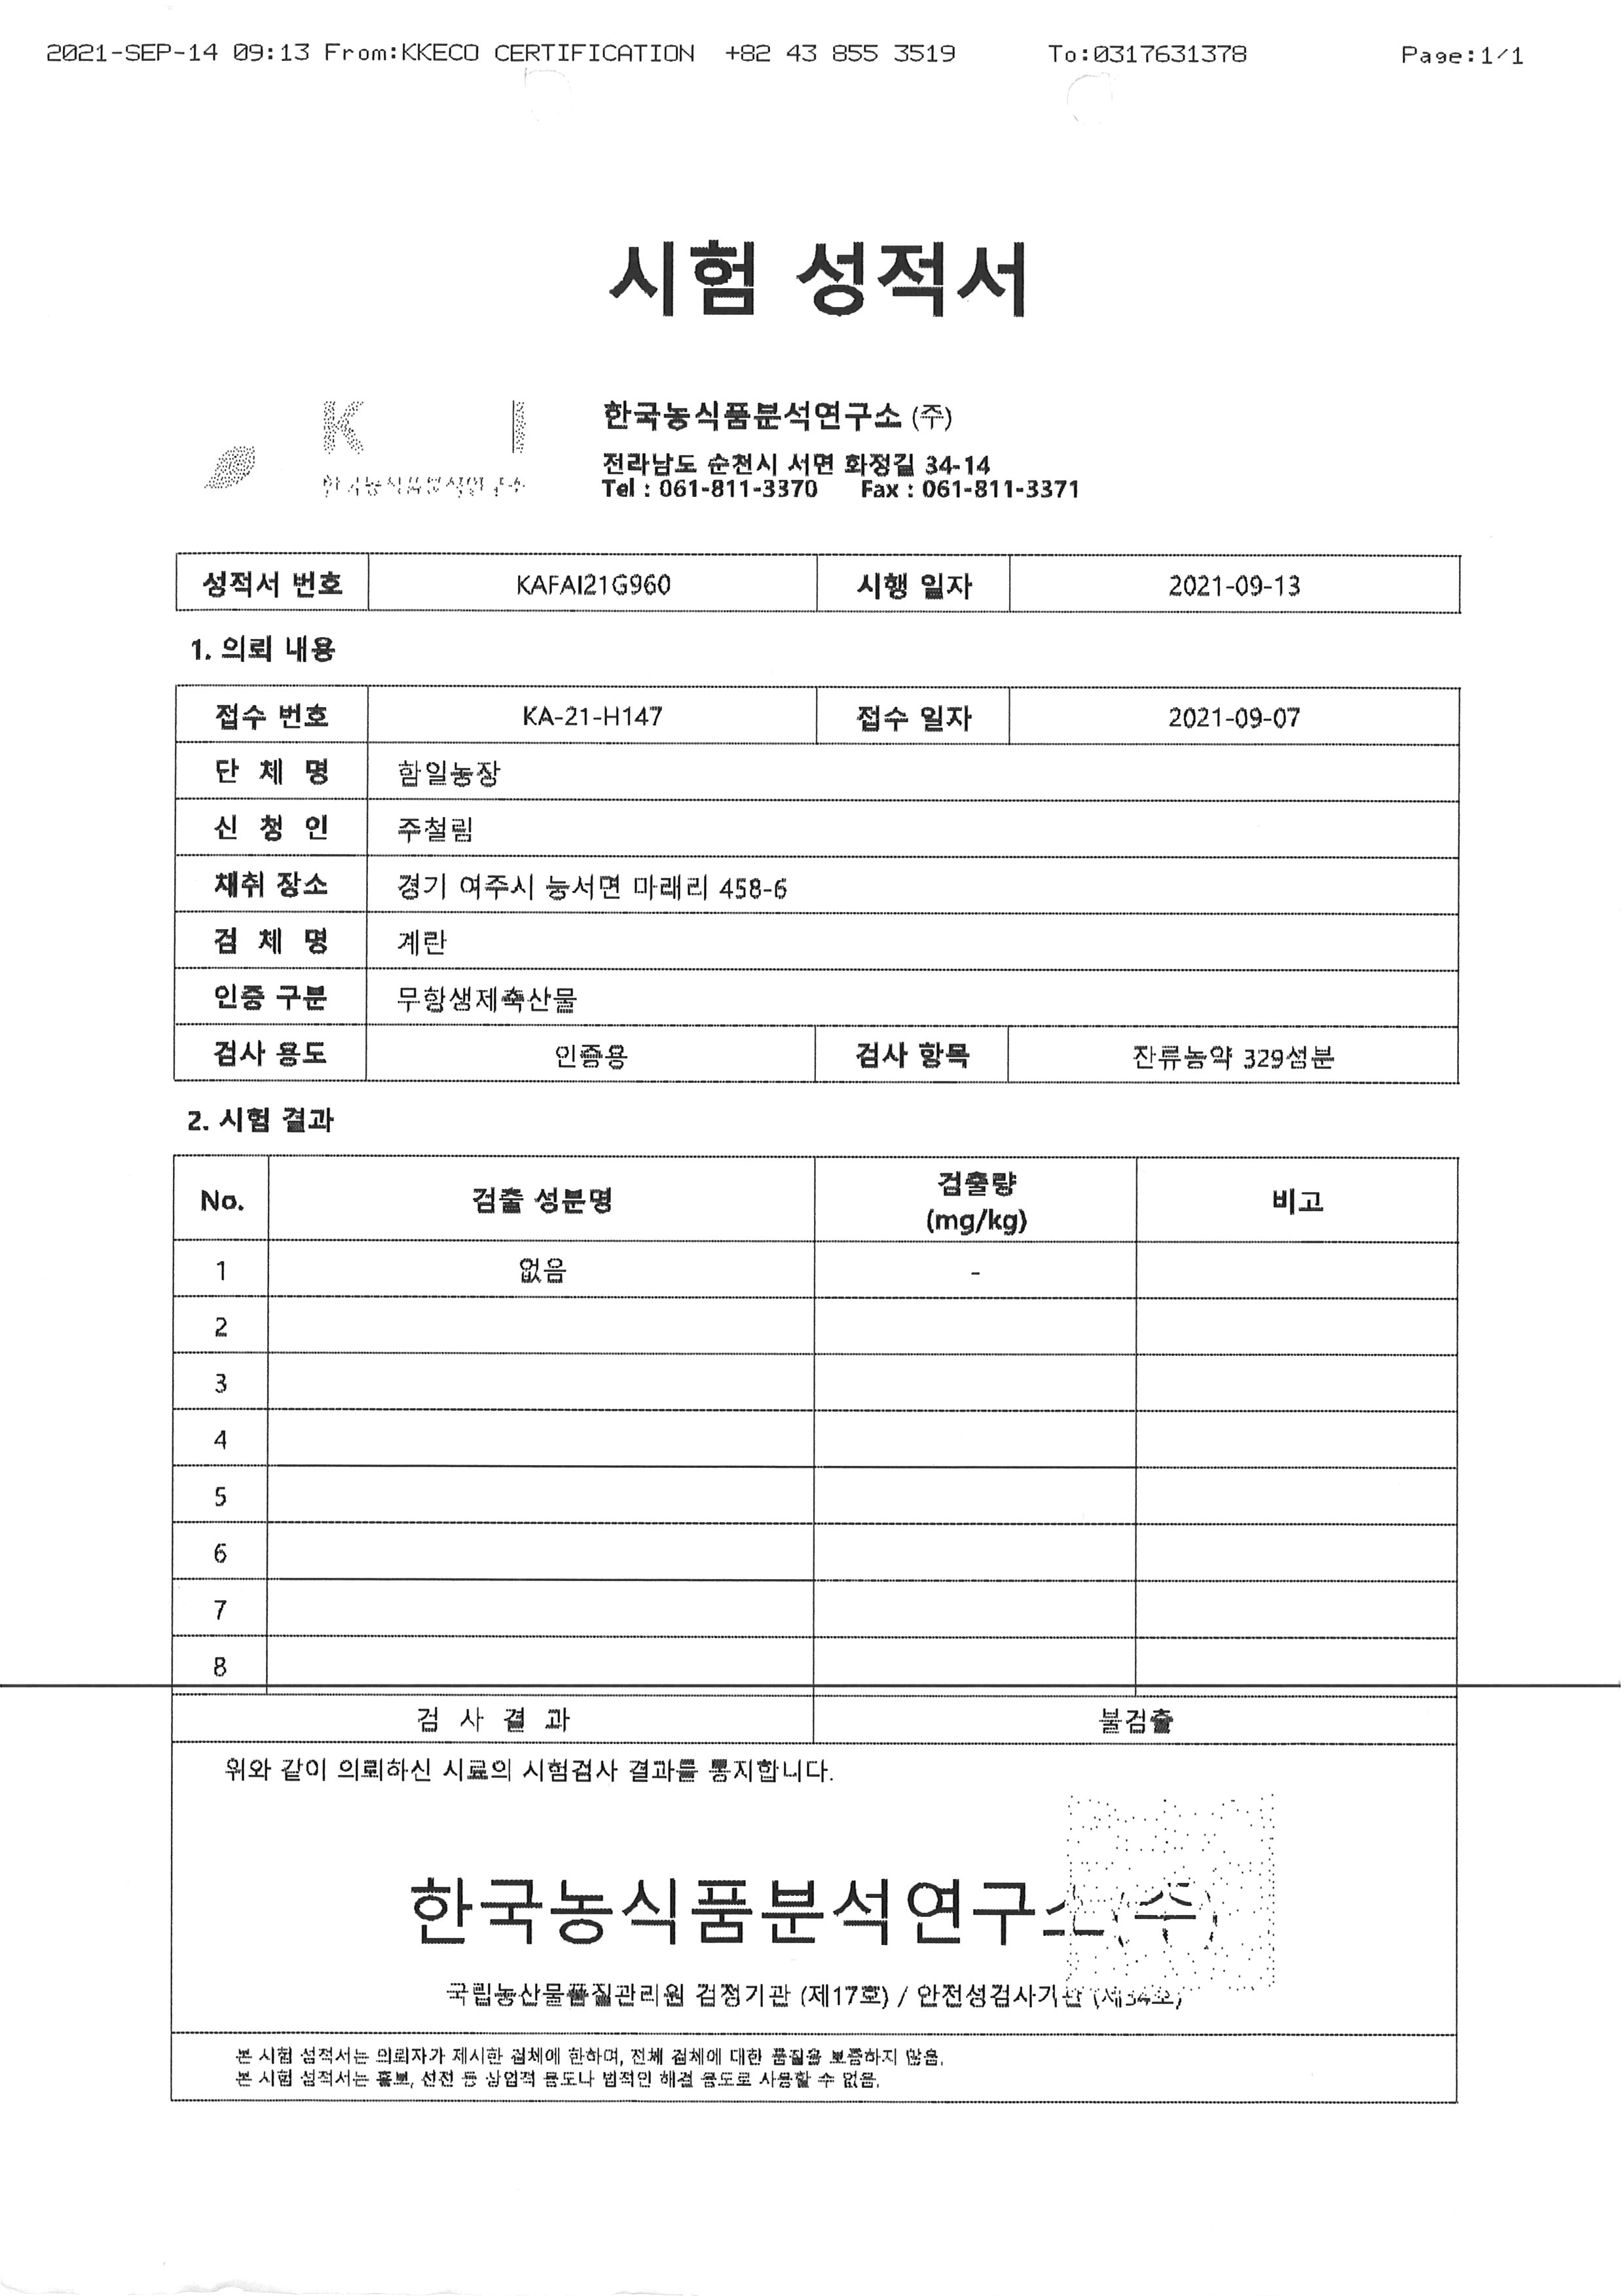 함일농장 시험성적서01_20210913.jpg